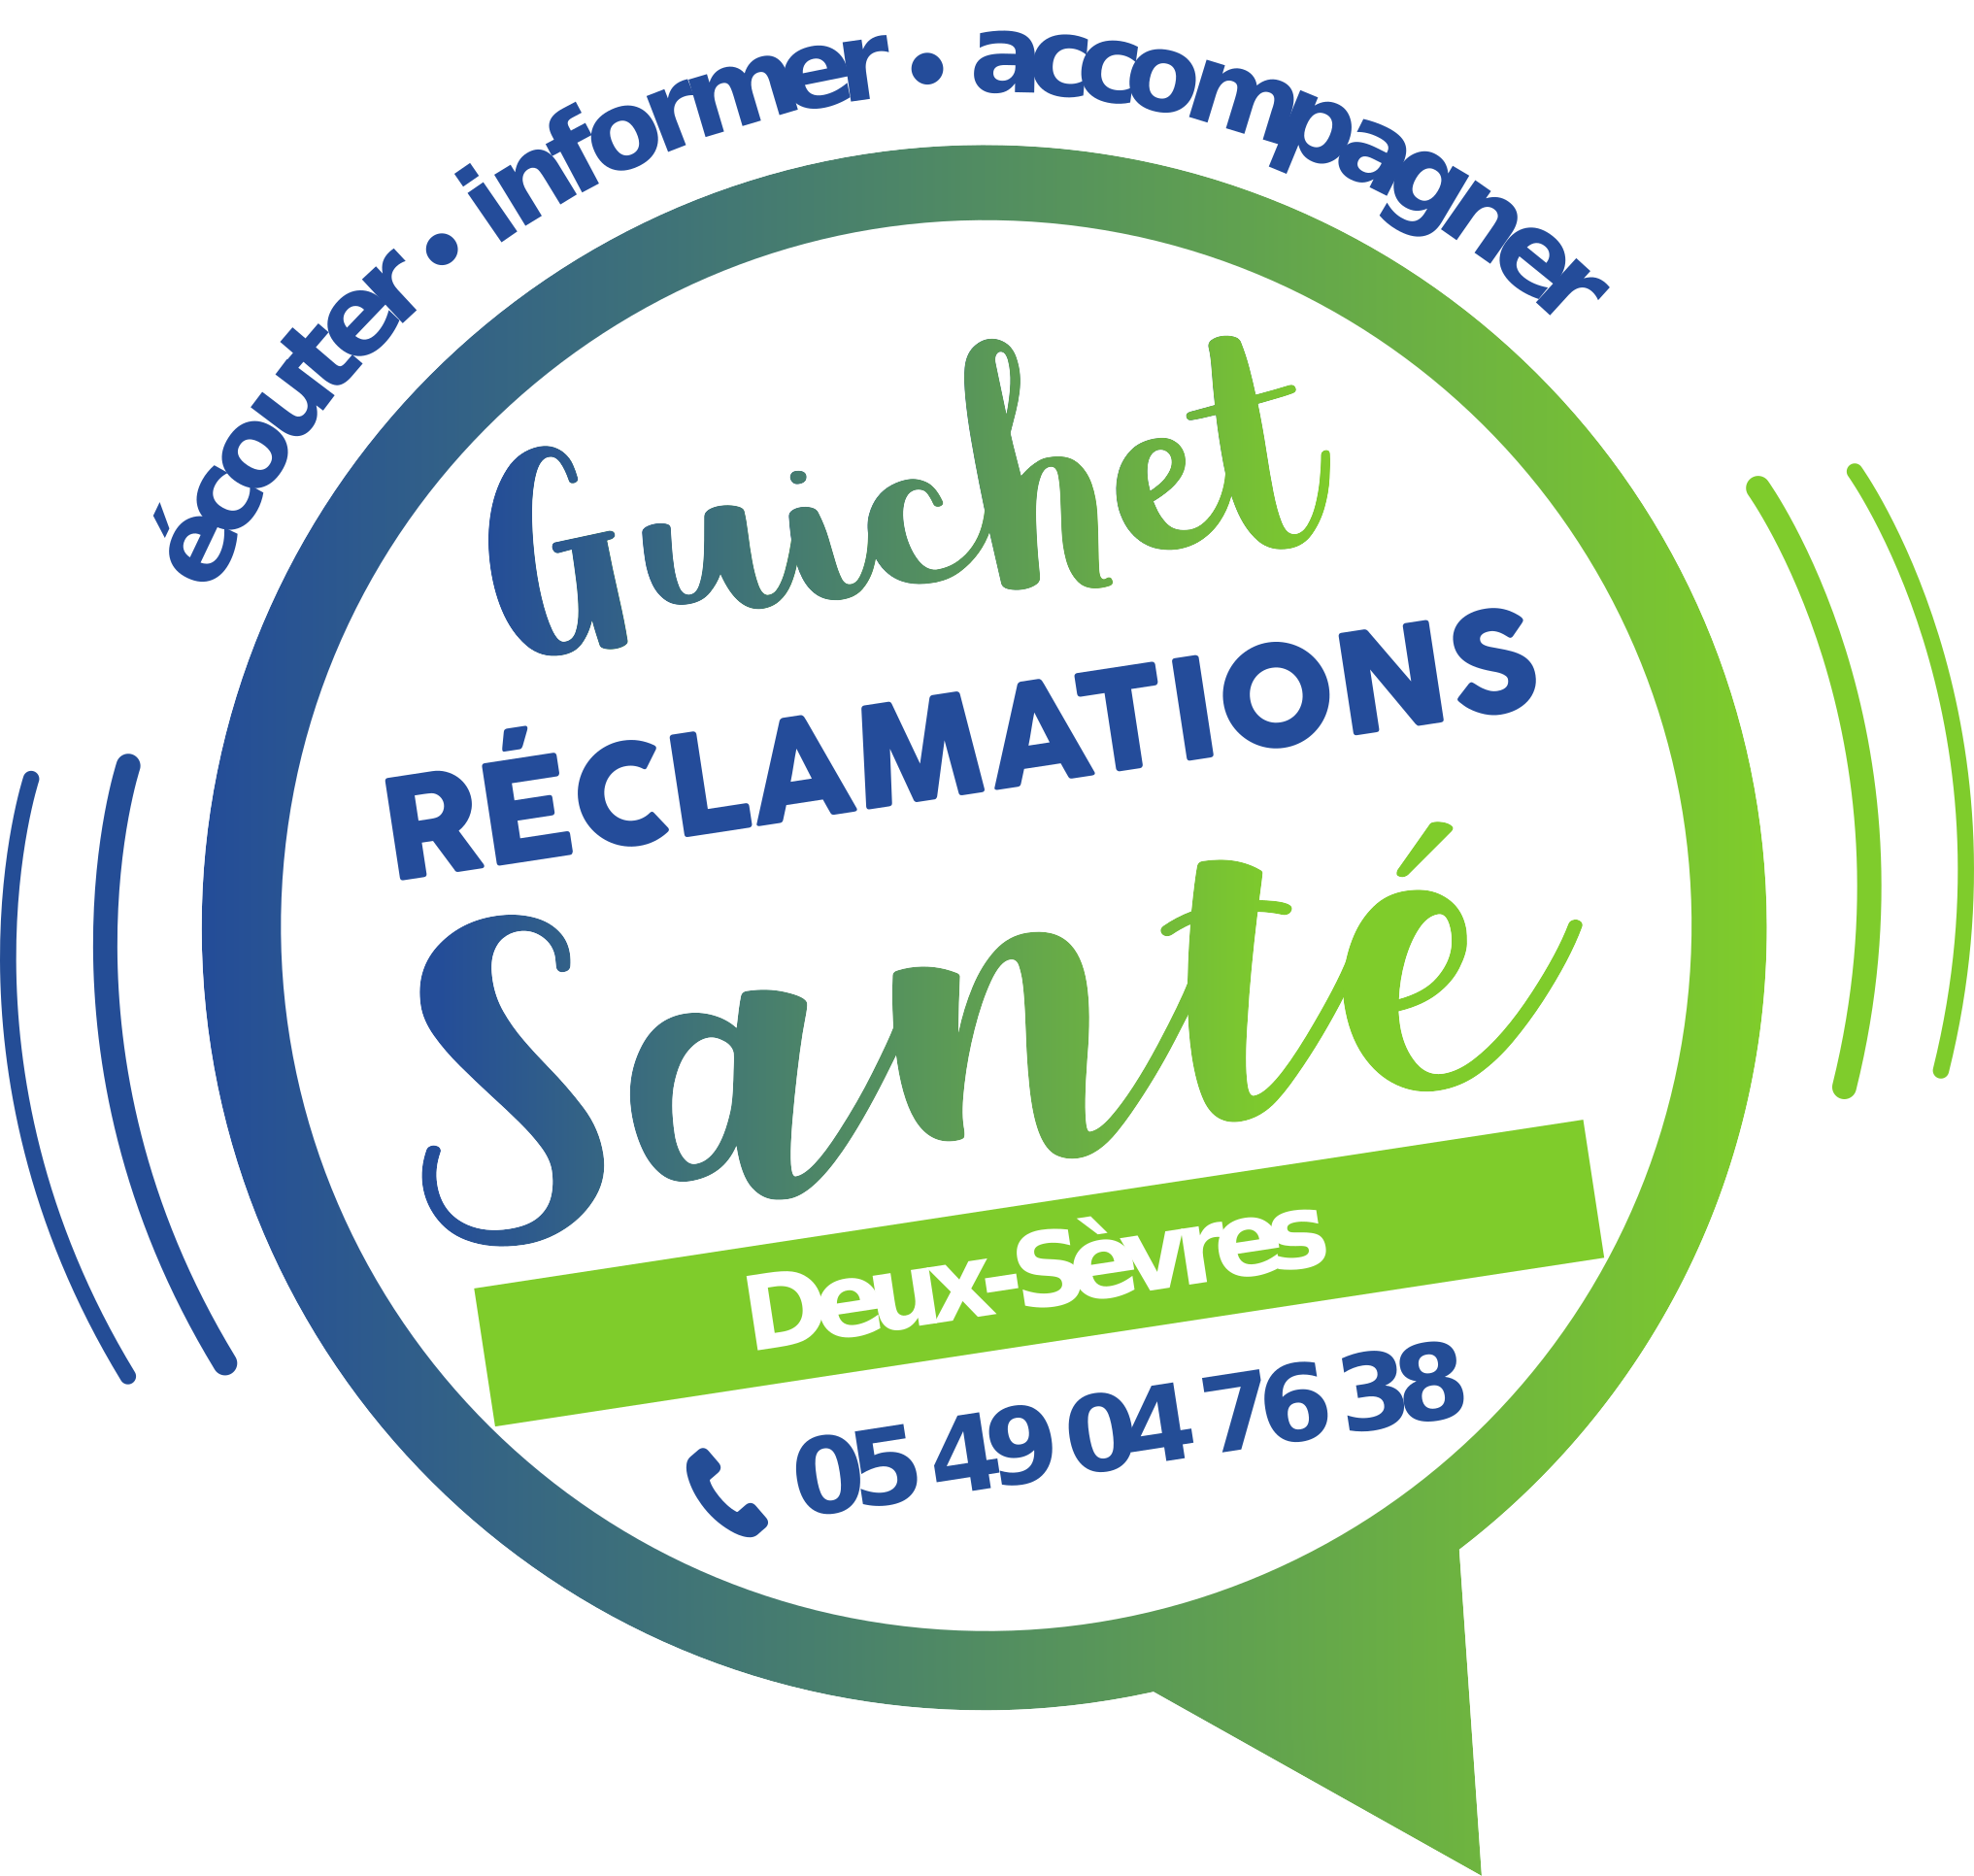 Guichet réclamation Santé Deux-Sèvre.png